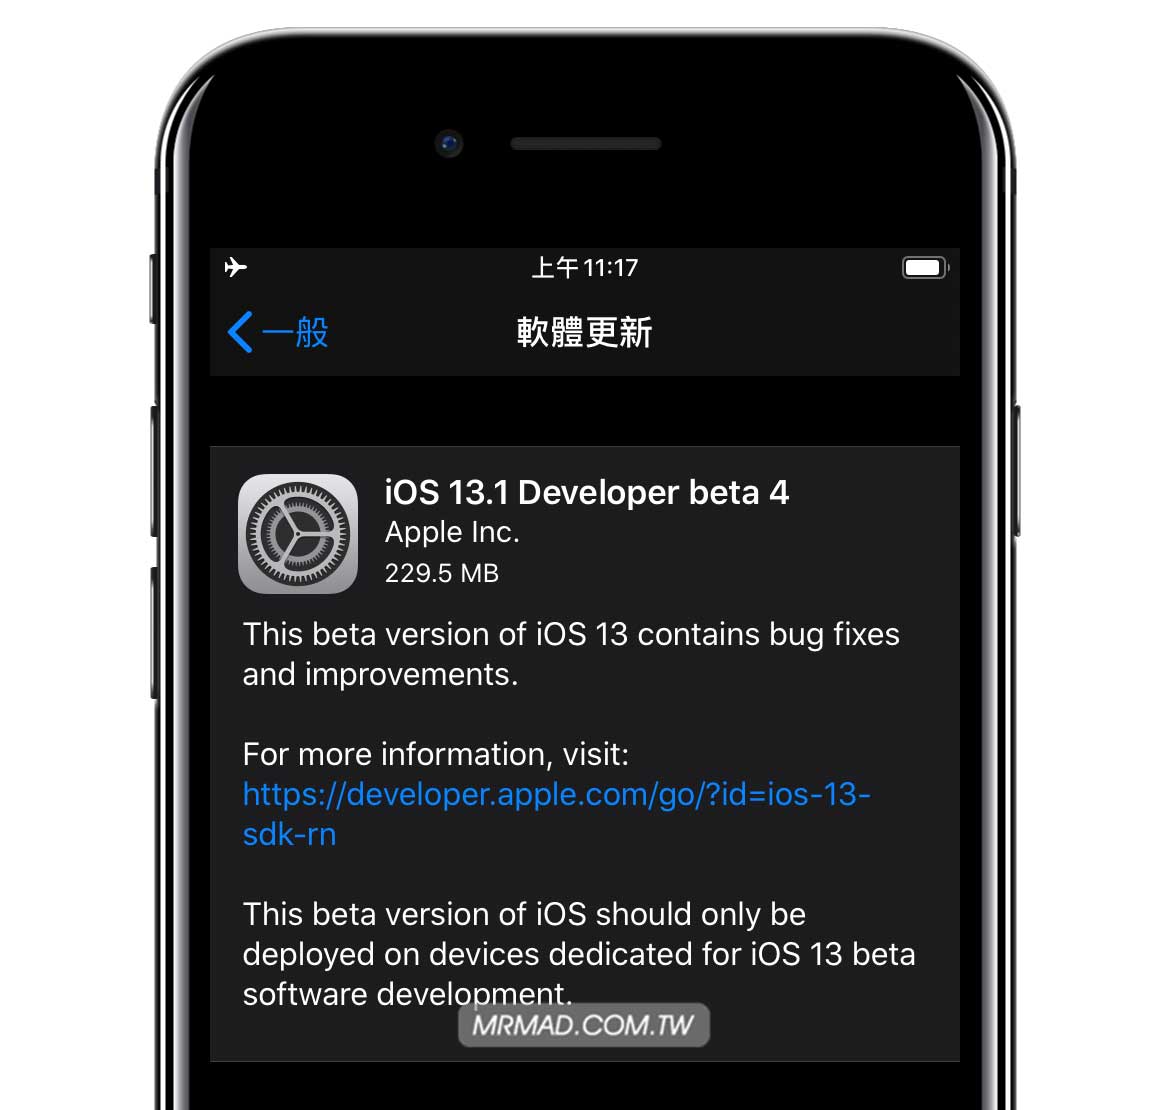 已经升级 iOS 13.1 Beta 用户该怎么升级到 iOS 13 正式版本